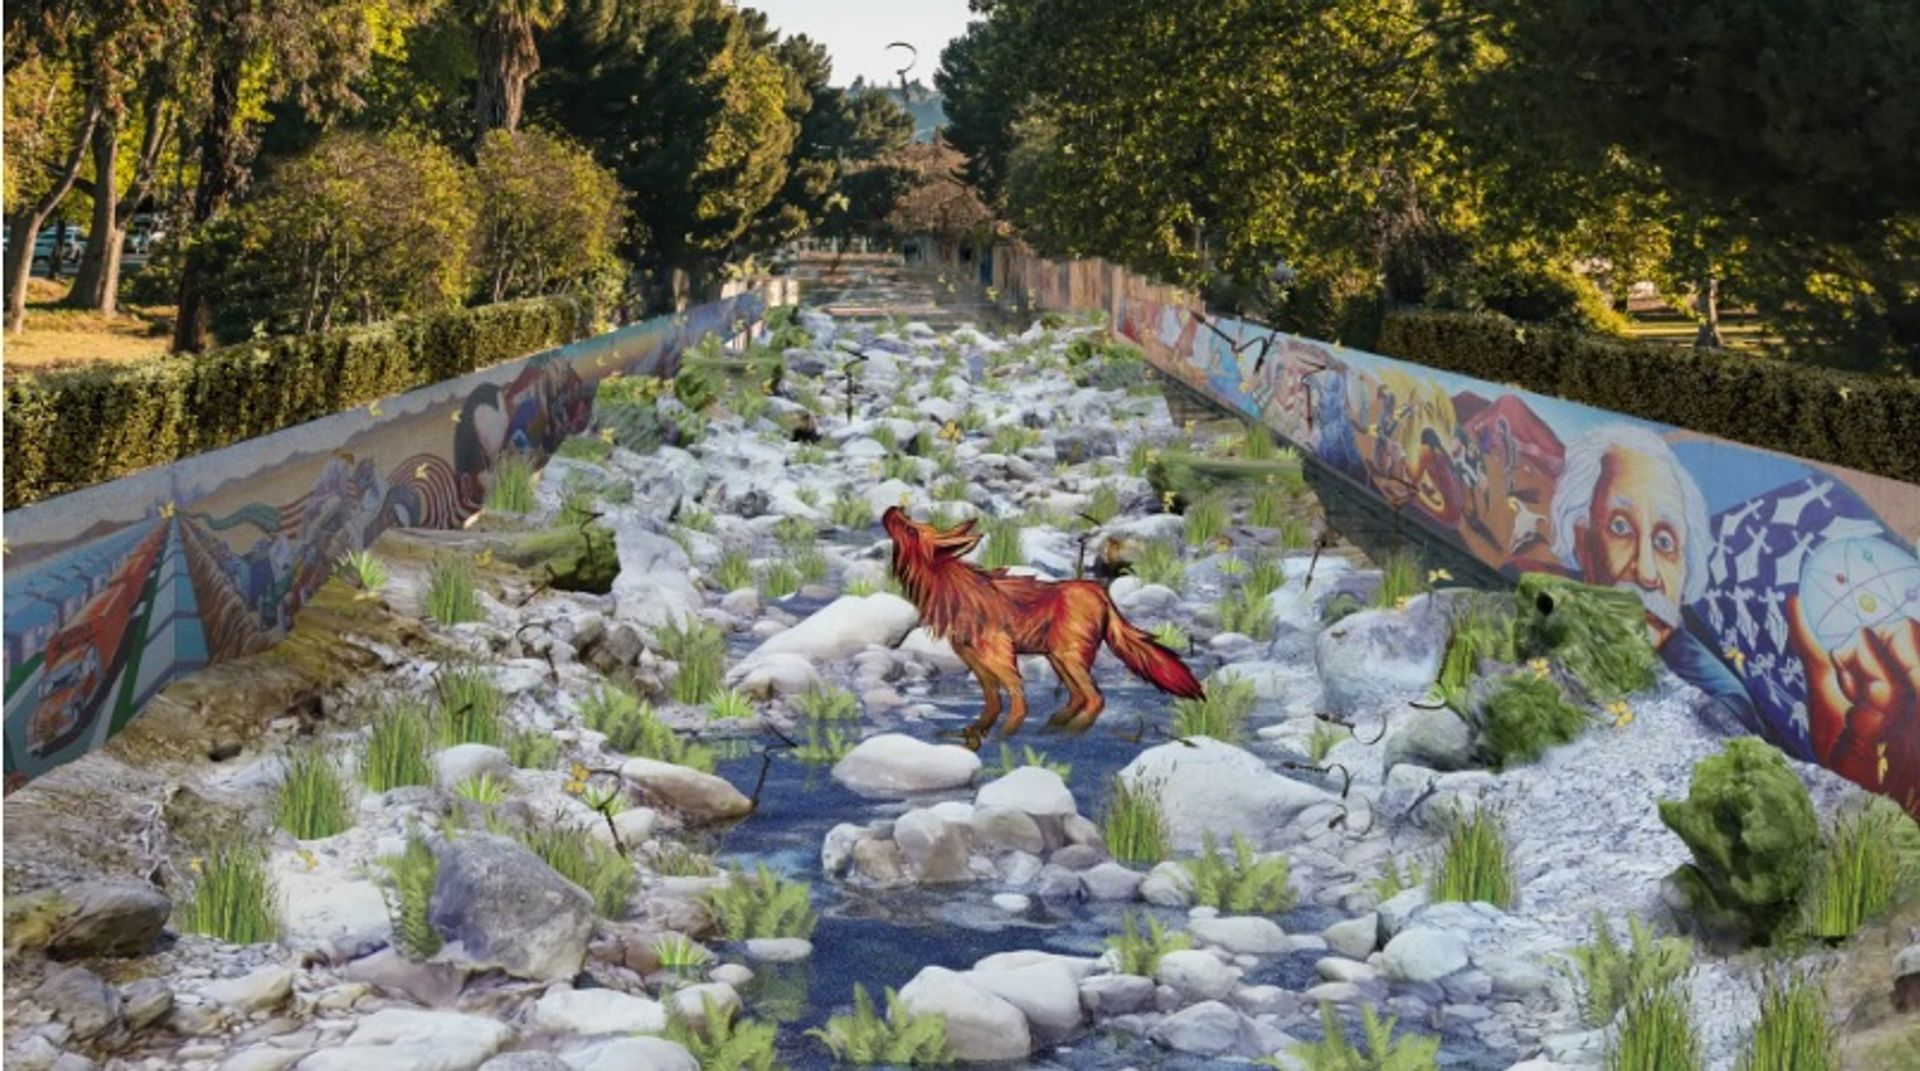 תמונה מתוך: The River Once Ran, 2022 של ג'ודי באקה

באדיבות האמן, Snap Inc והמוזיאון לאמנות של מחוז לוס אנג'לס